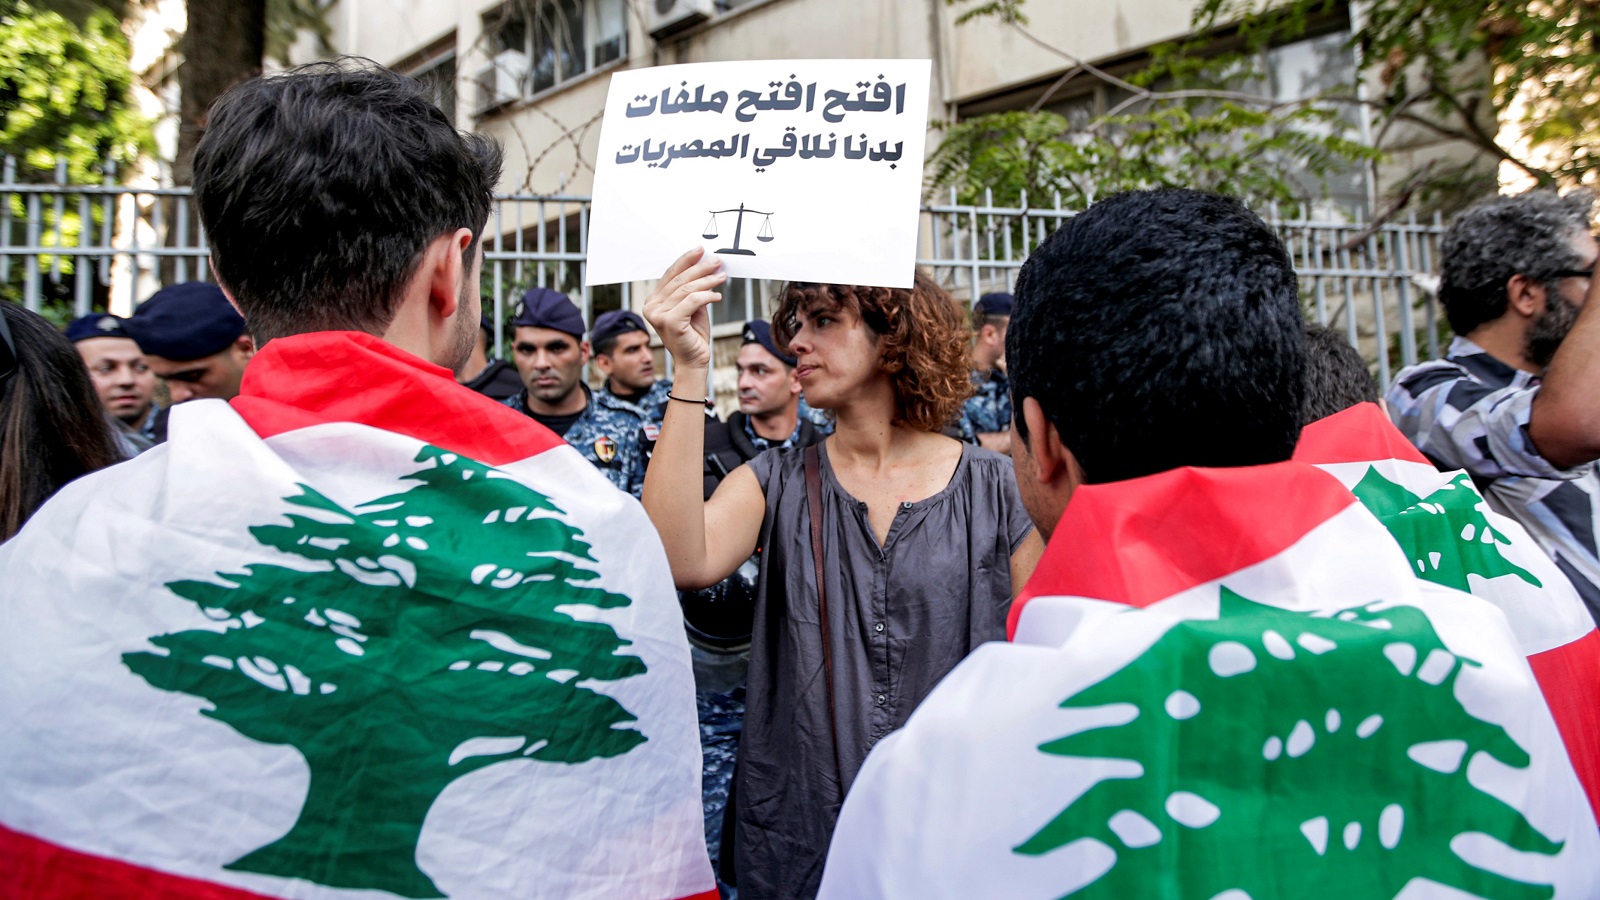 قاض وسيناتور فرنسيان في لبنان: البحث باستعادة الأموال المنهوبة